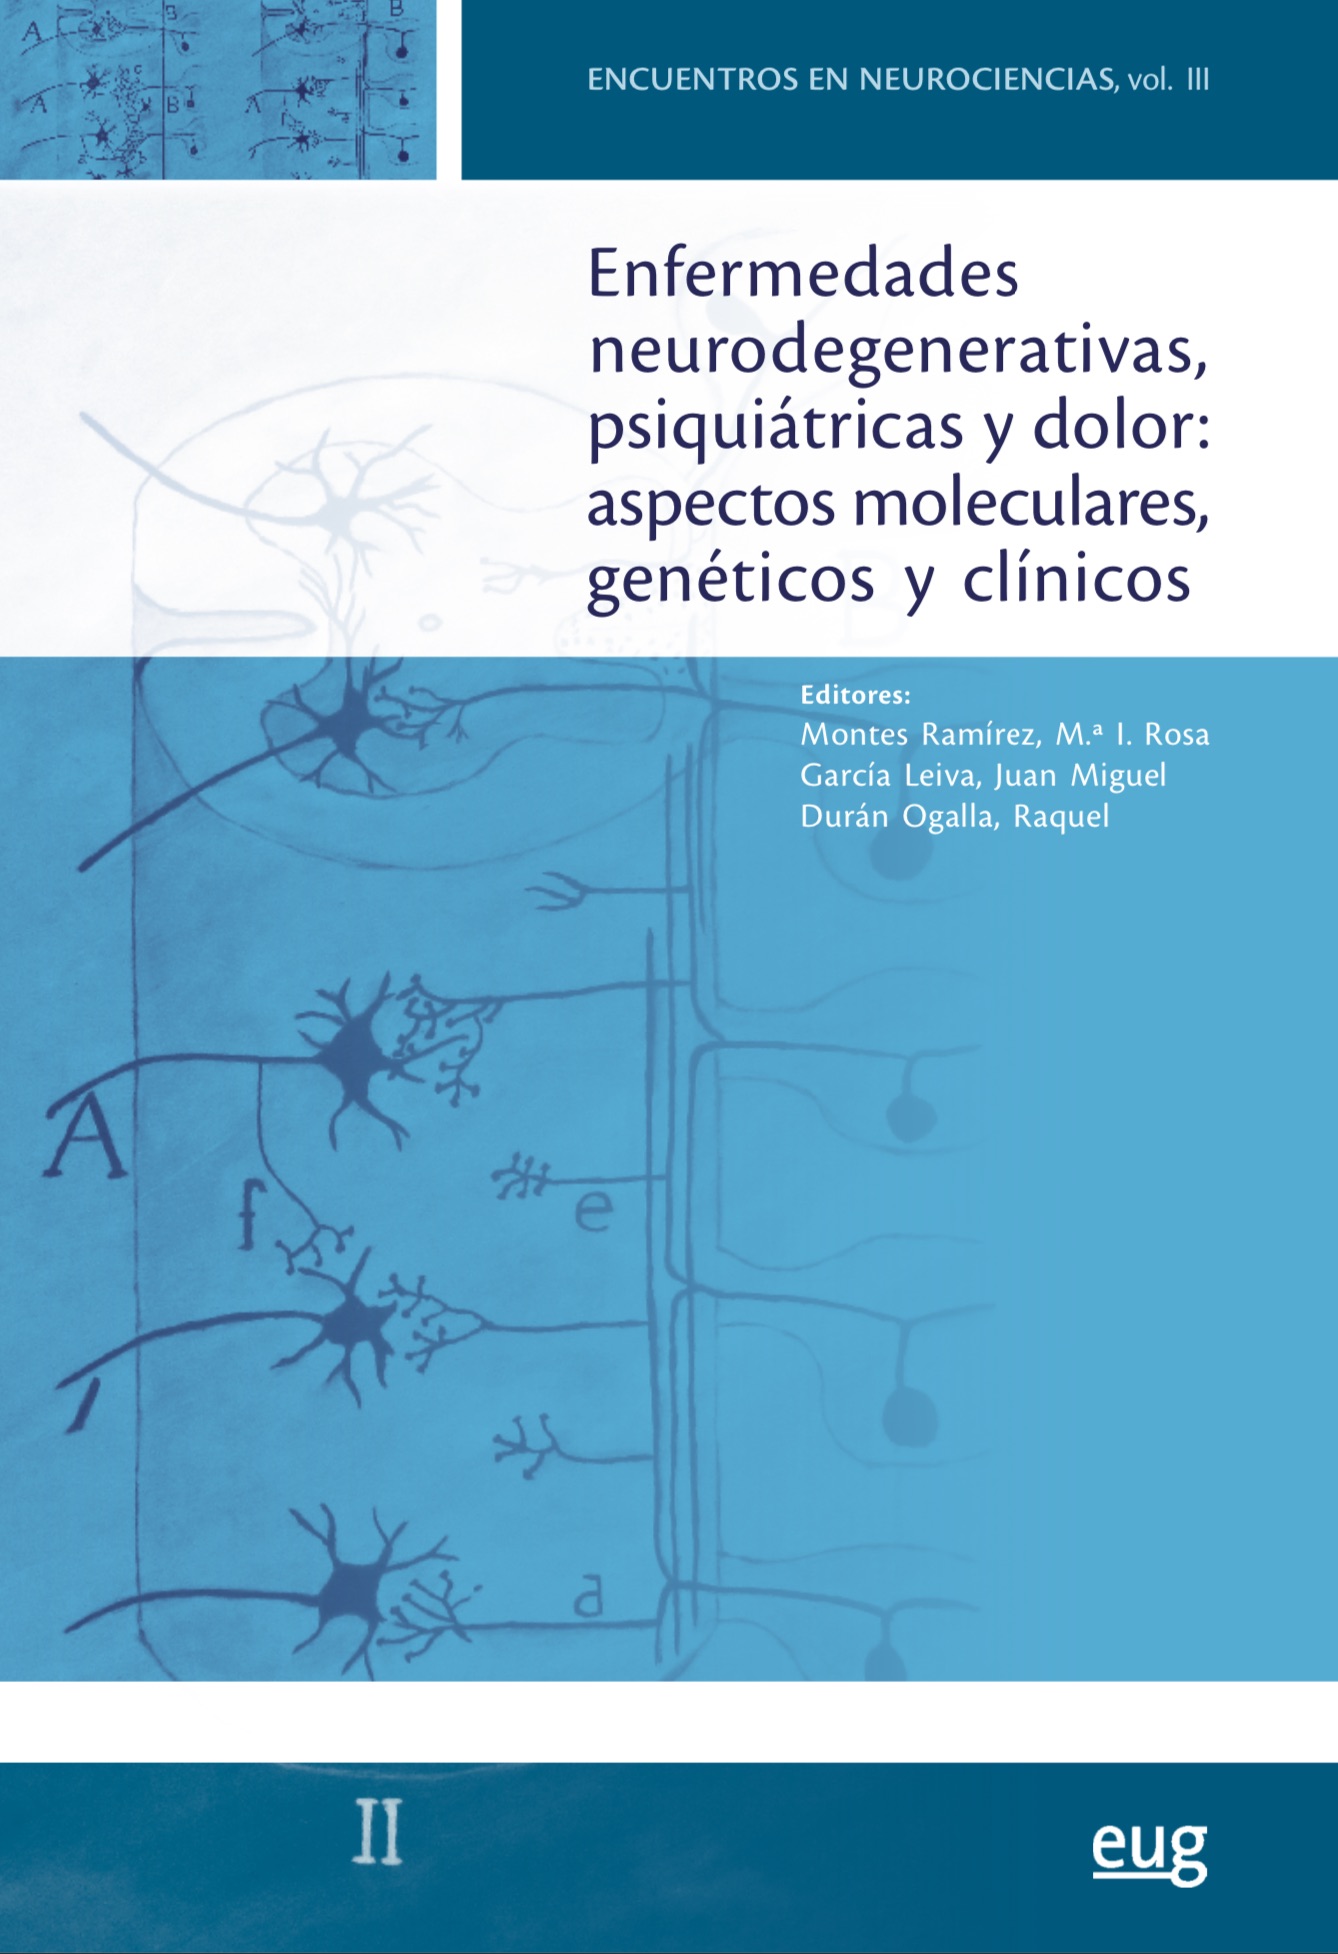 Encuentros en Neurociencias. Vol III. 2014